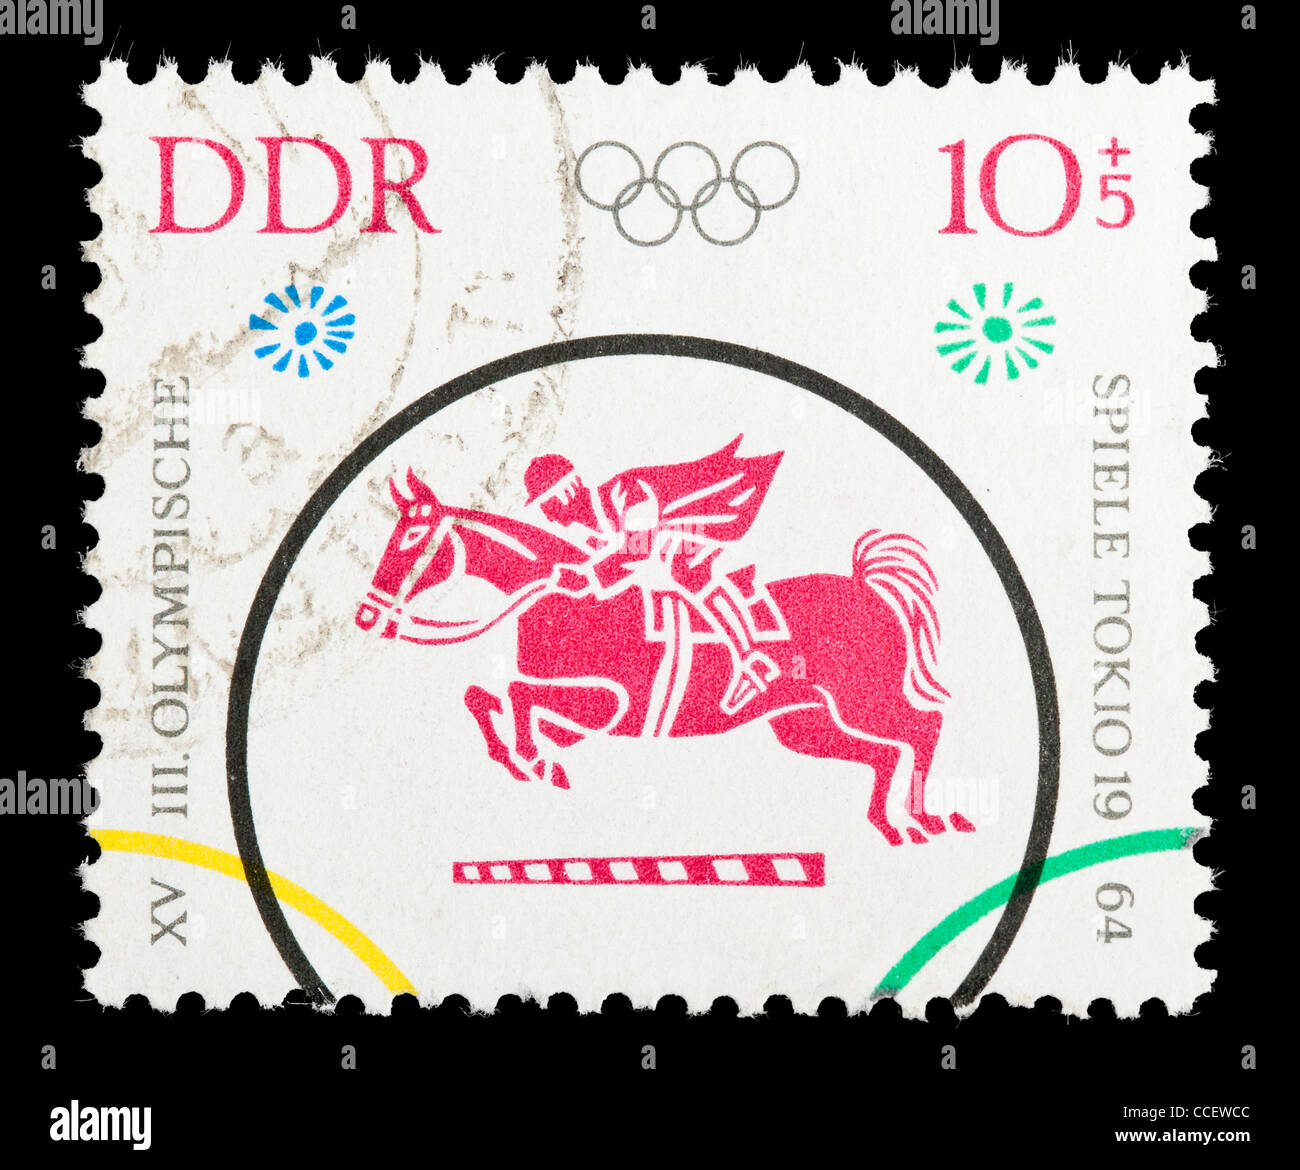 Sello: XVIII. Los Juegos Olímpicos de 1964, DDR, estampado Foto de stock